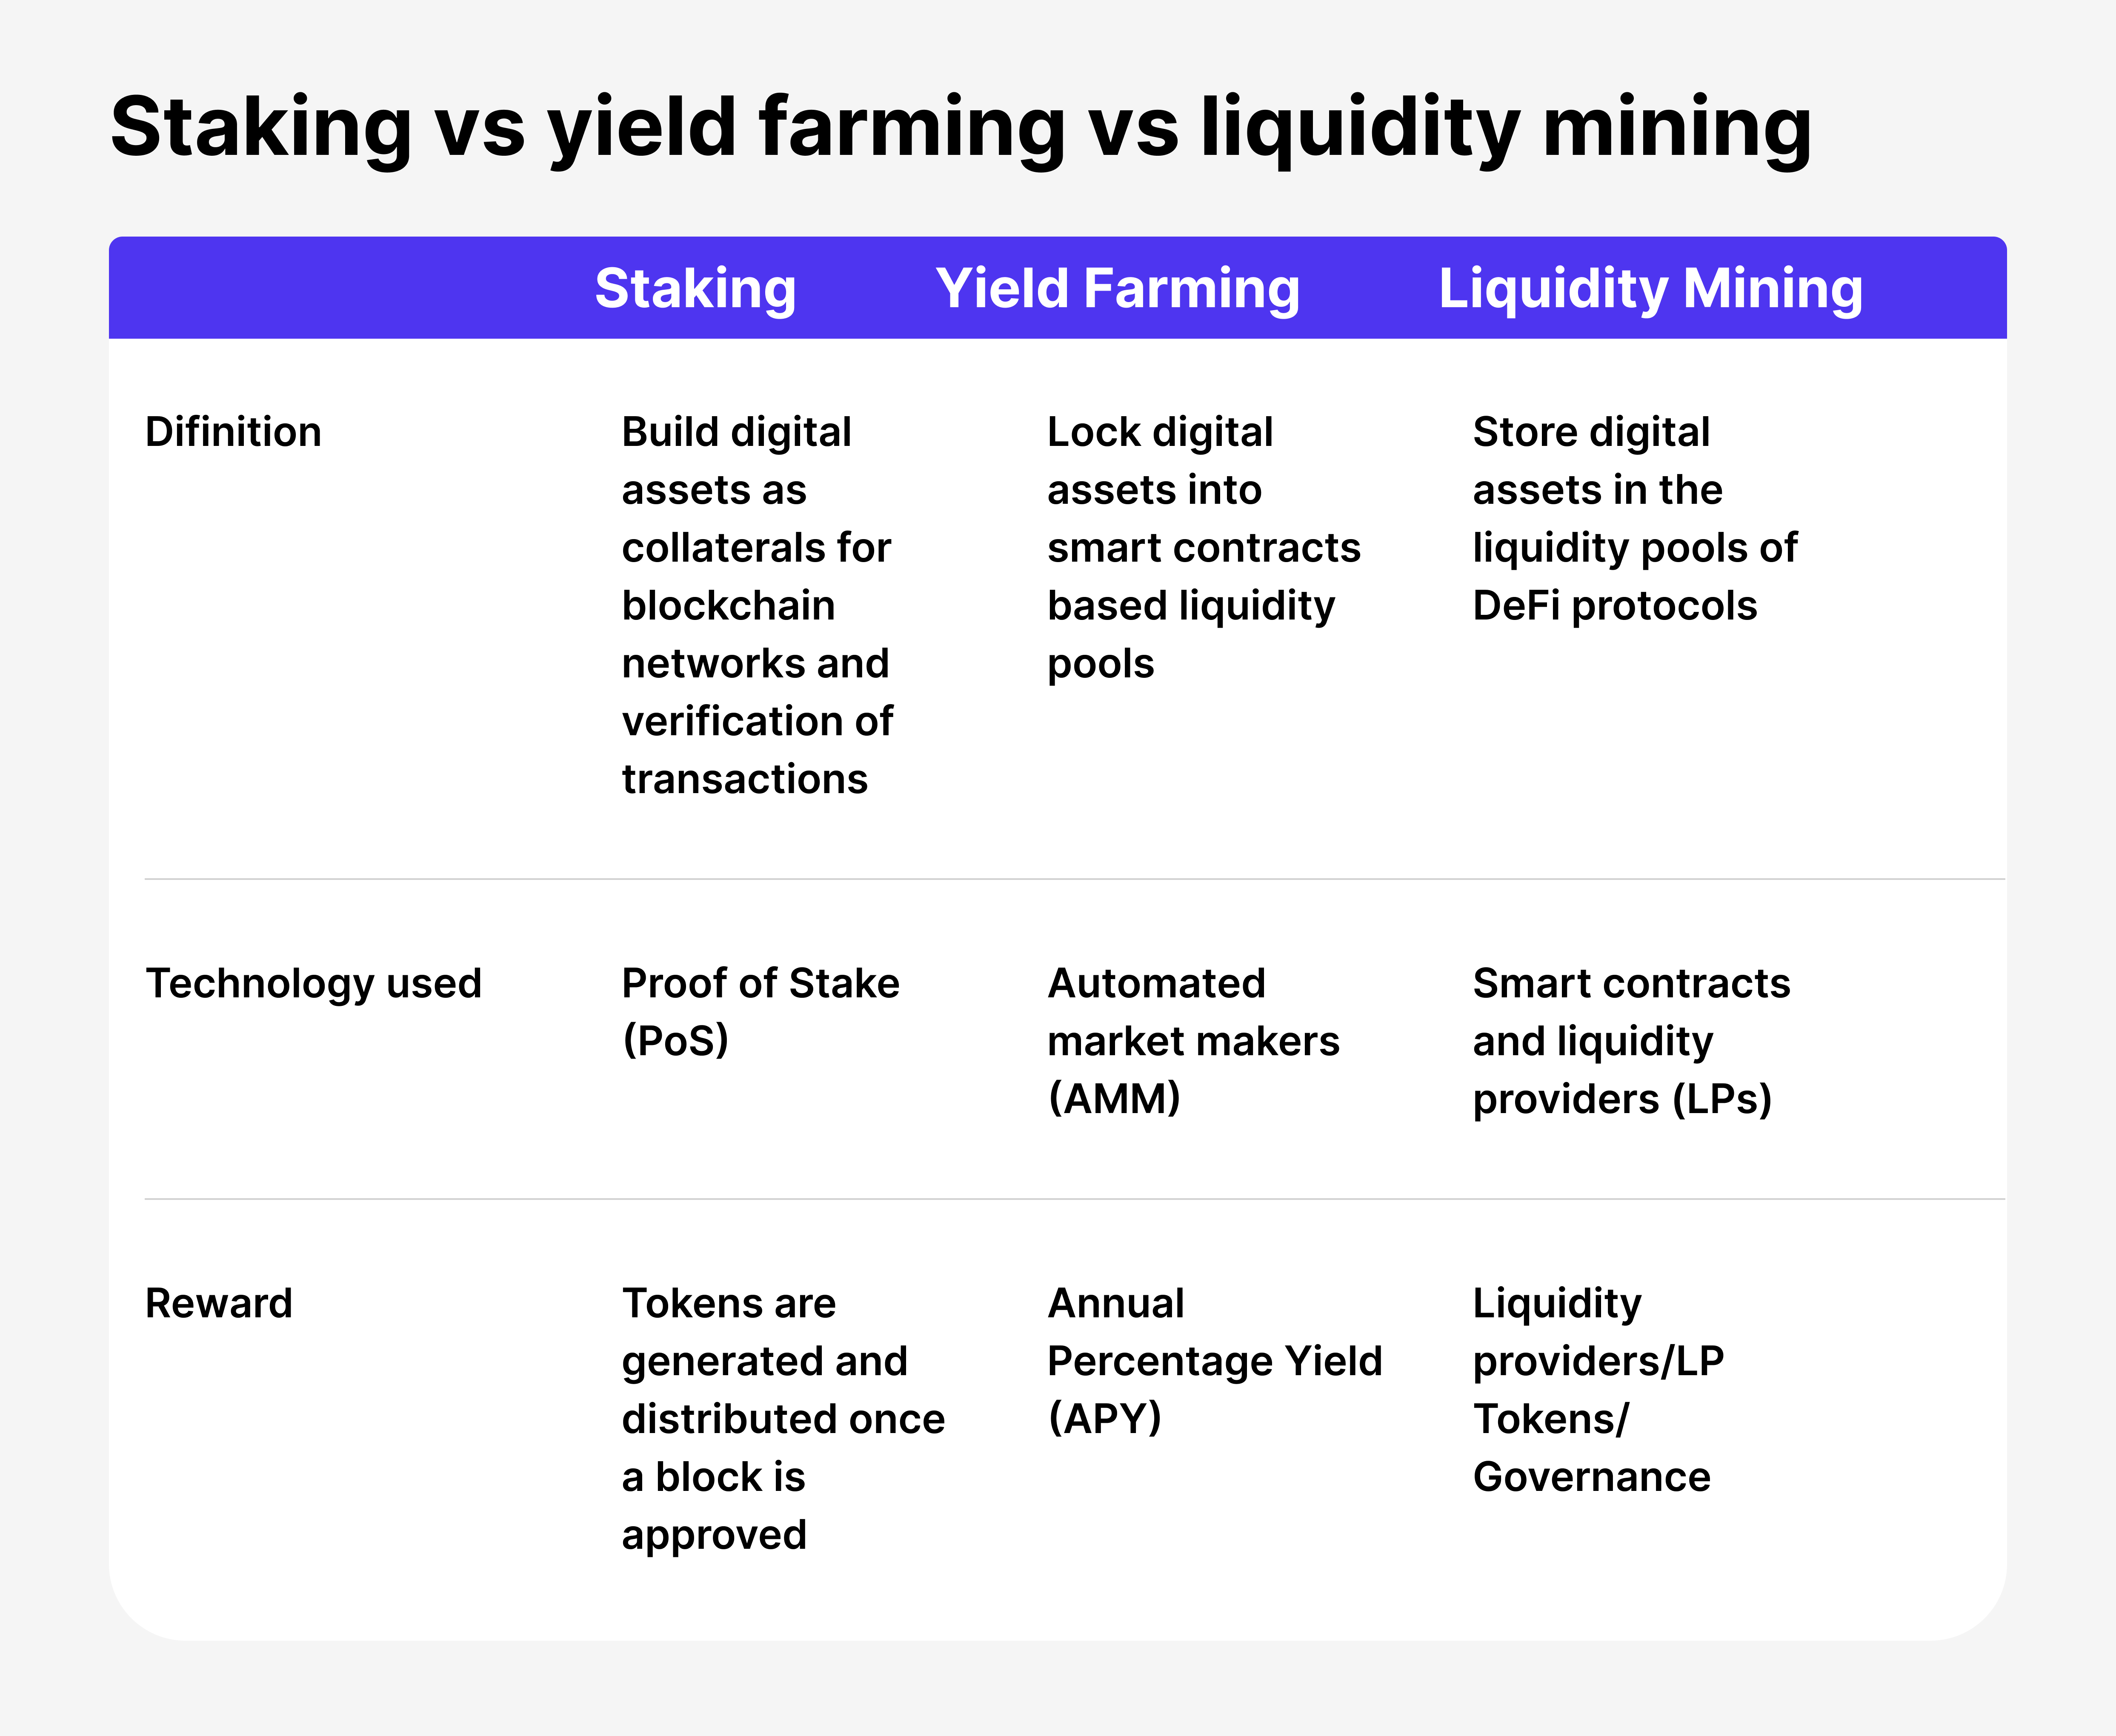 Yield Farming vs. Liquidity Mining